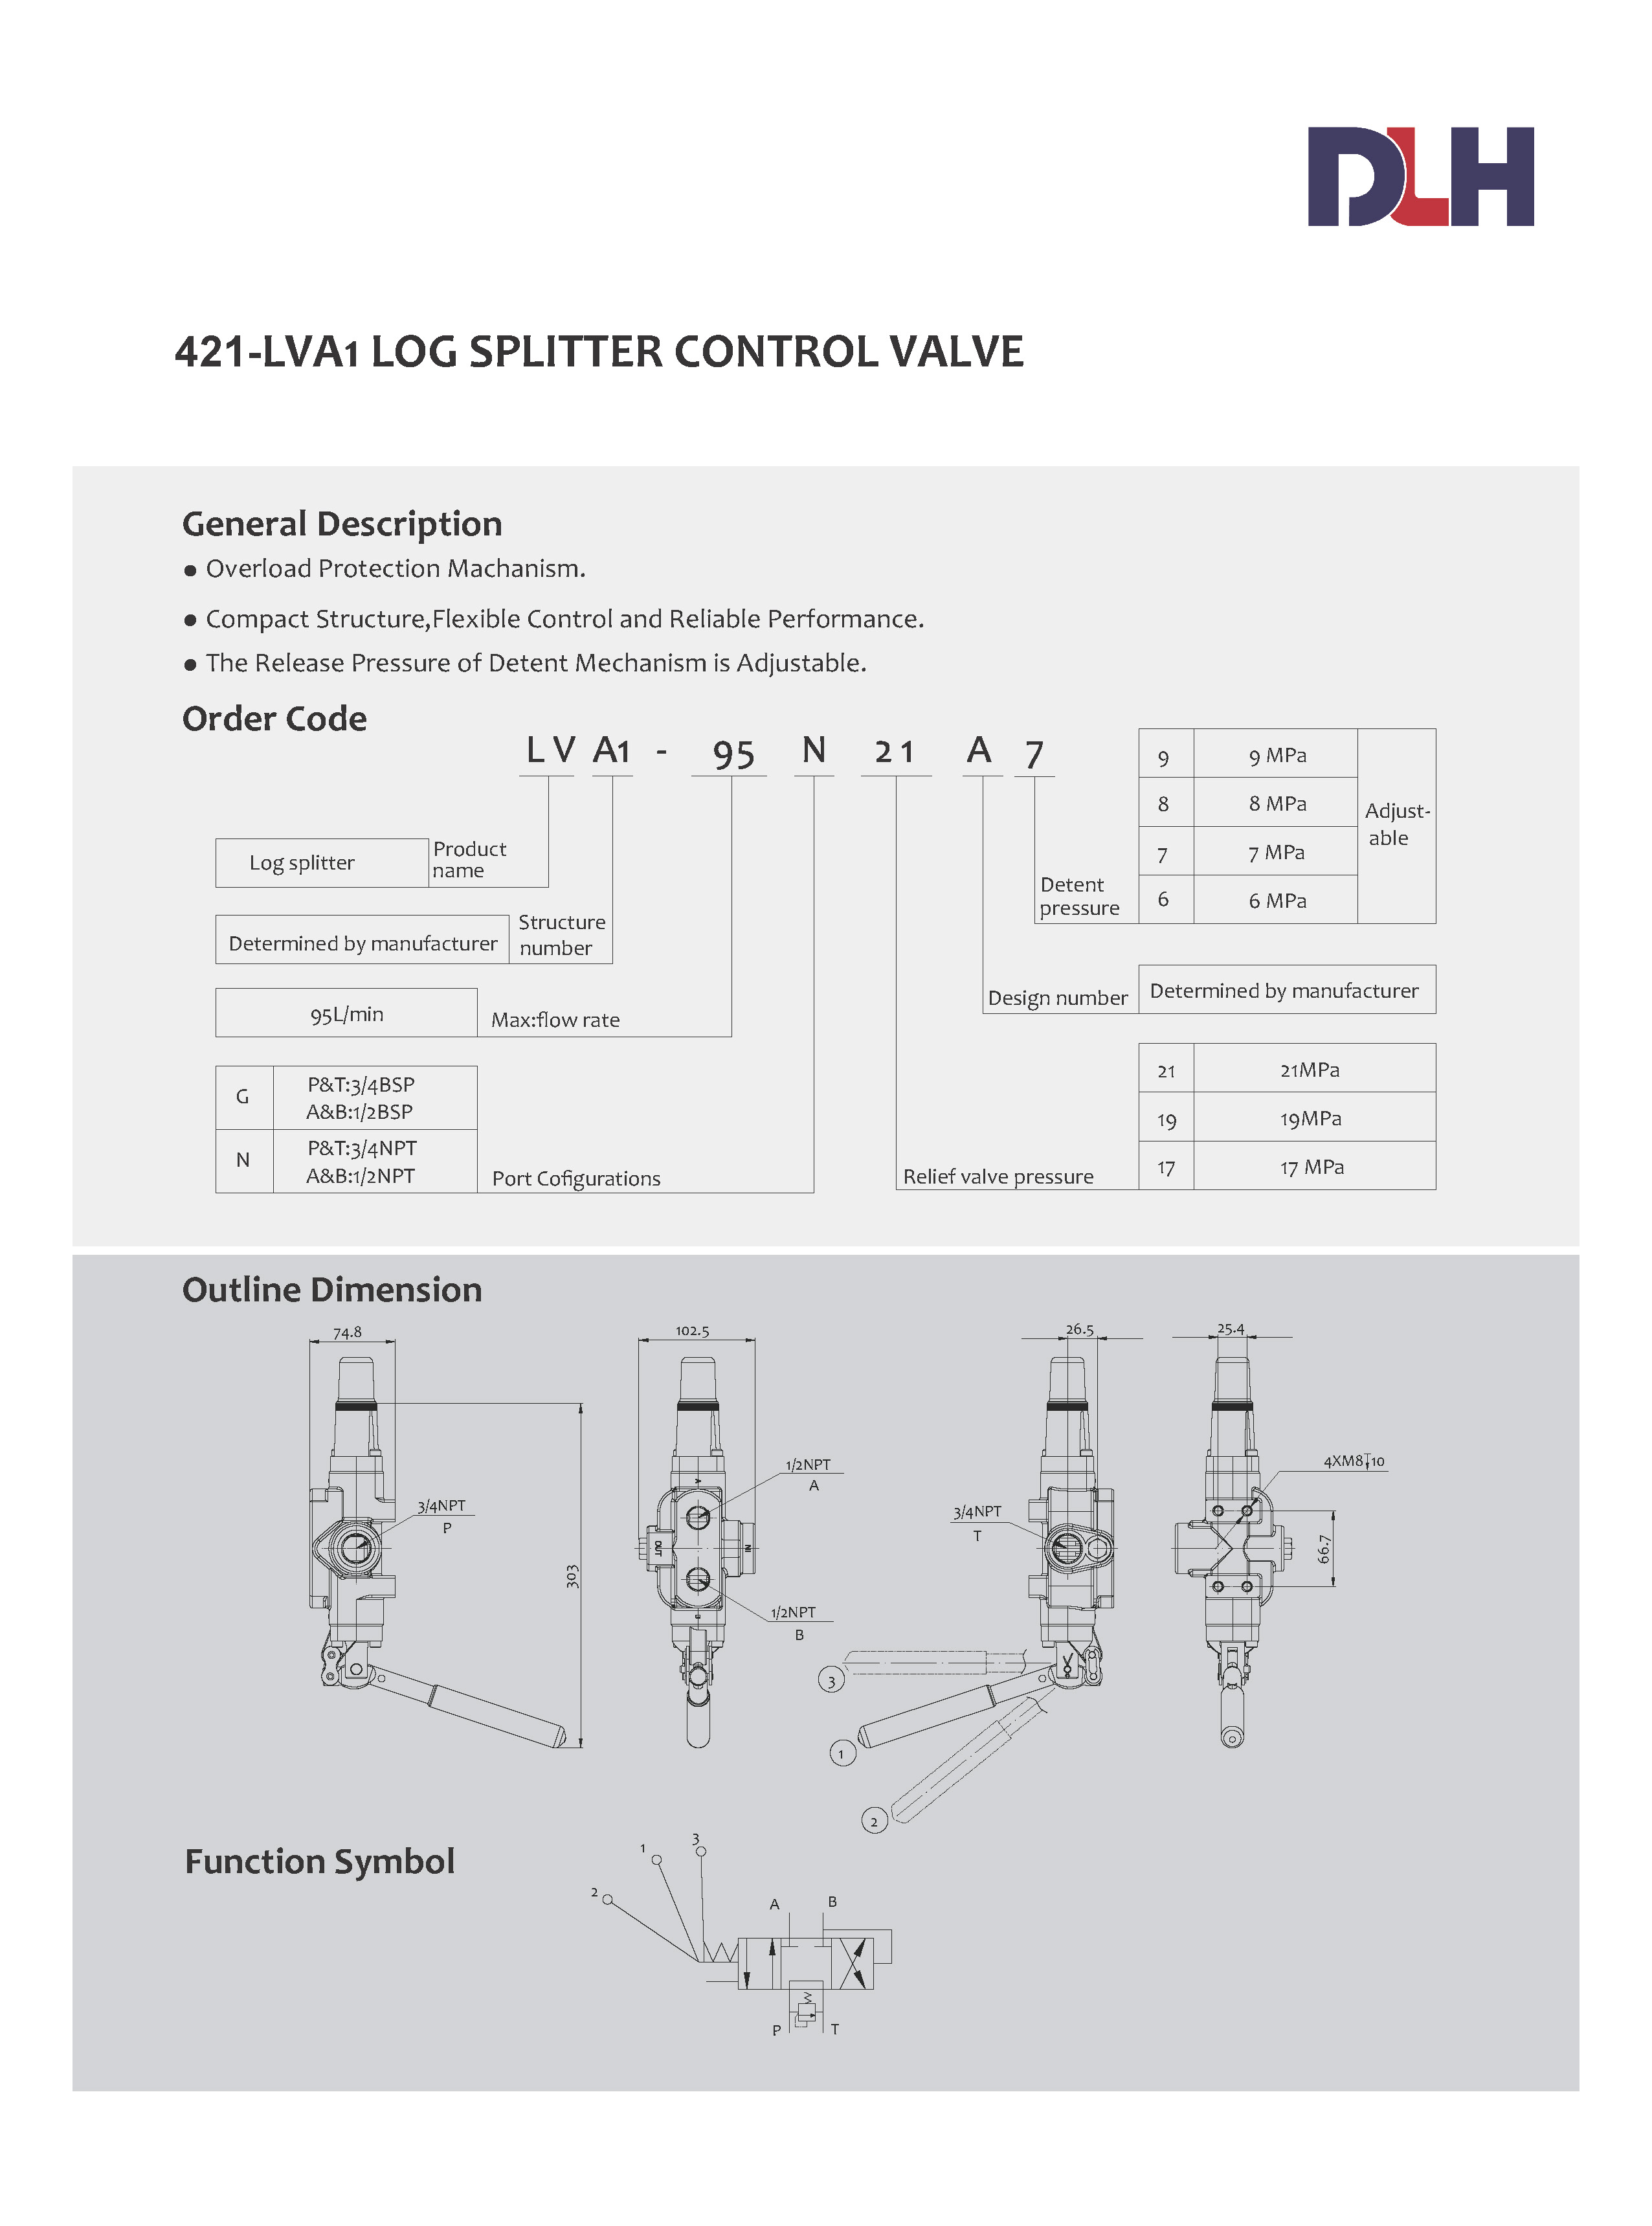 LVA1 Log Splitter Control Valves